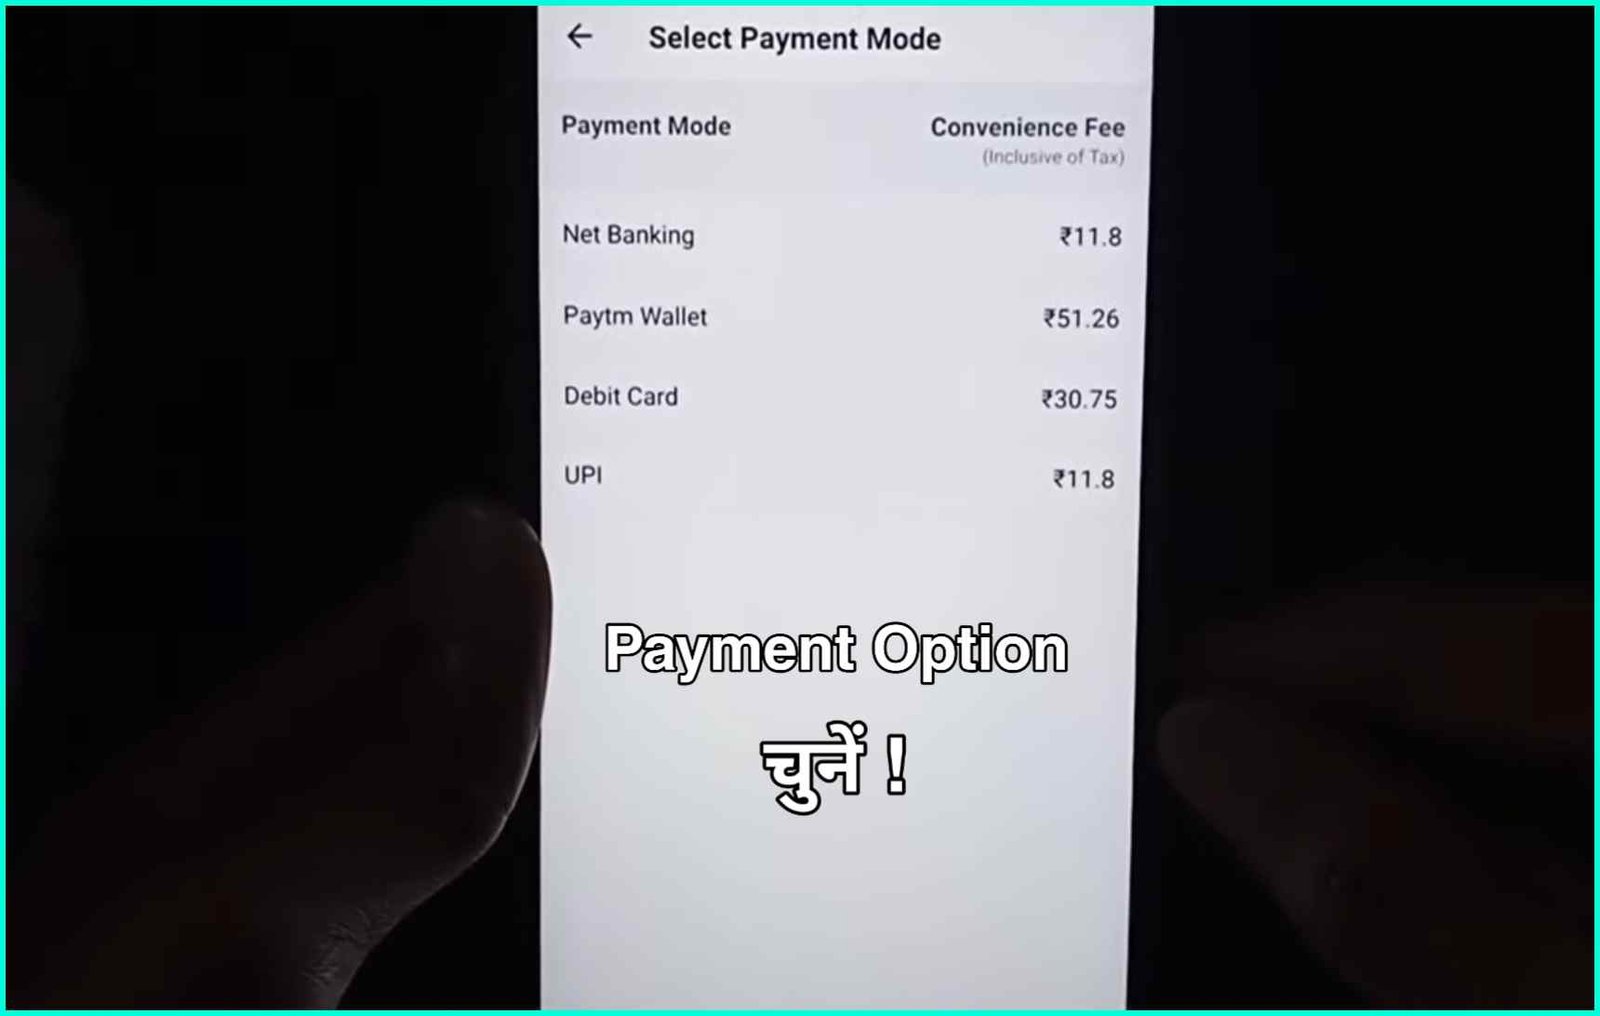 Select Payement option